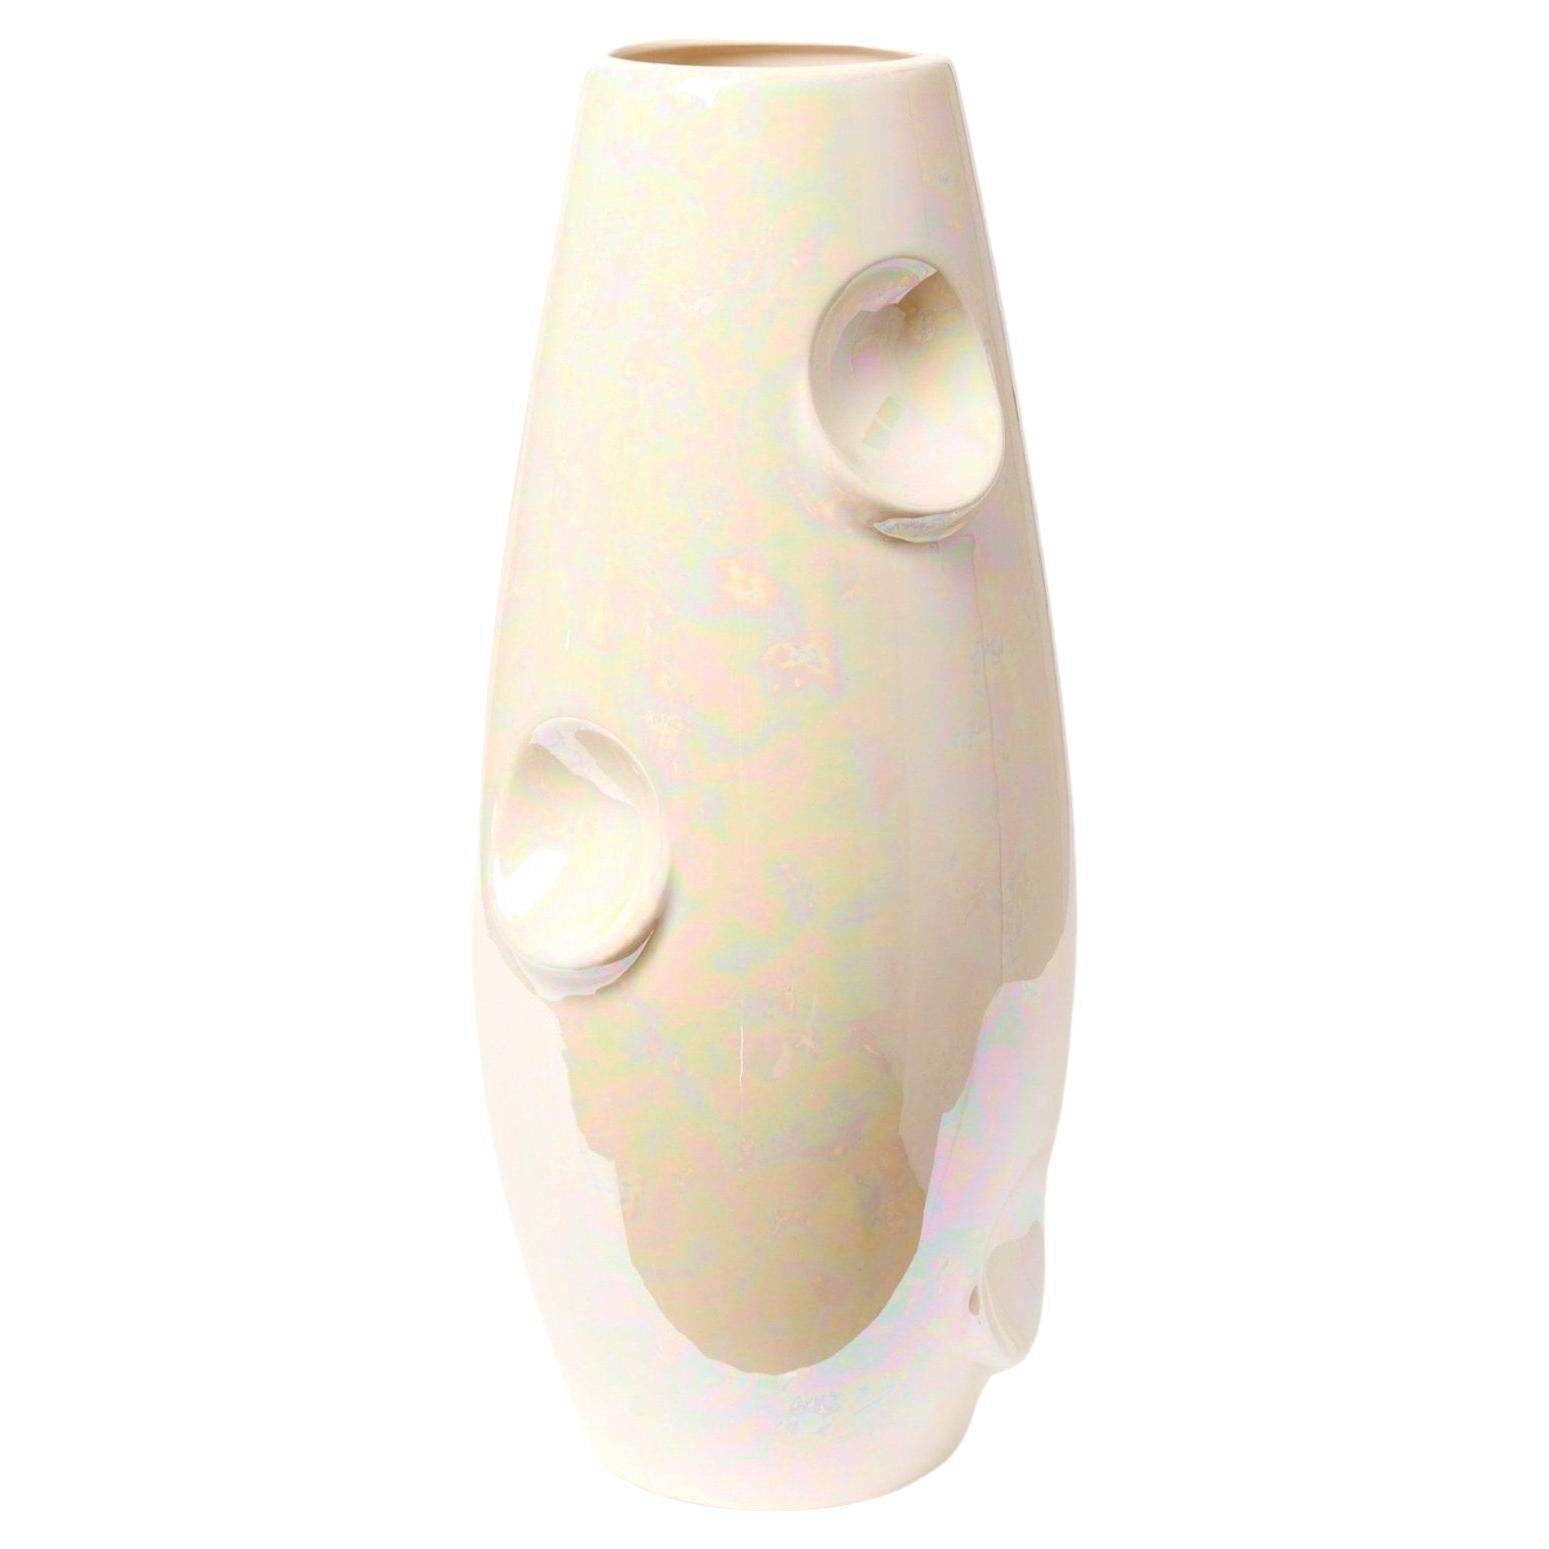 Le vase OKO / CYRK s'adapte à l'espace dans lequel il se trouve. En fonction de l'intérieur, il crée une atmosphère amusante ou (dans la version Nude) introduit discrètement un peu de couleur. Dans cette édition, la forme classique du vase OKO est